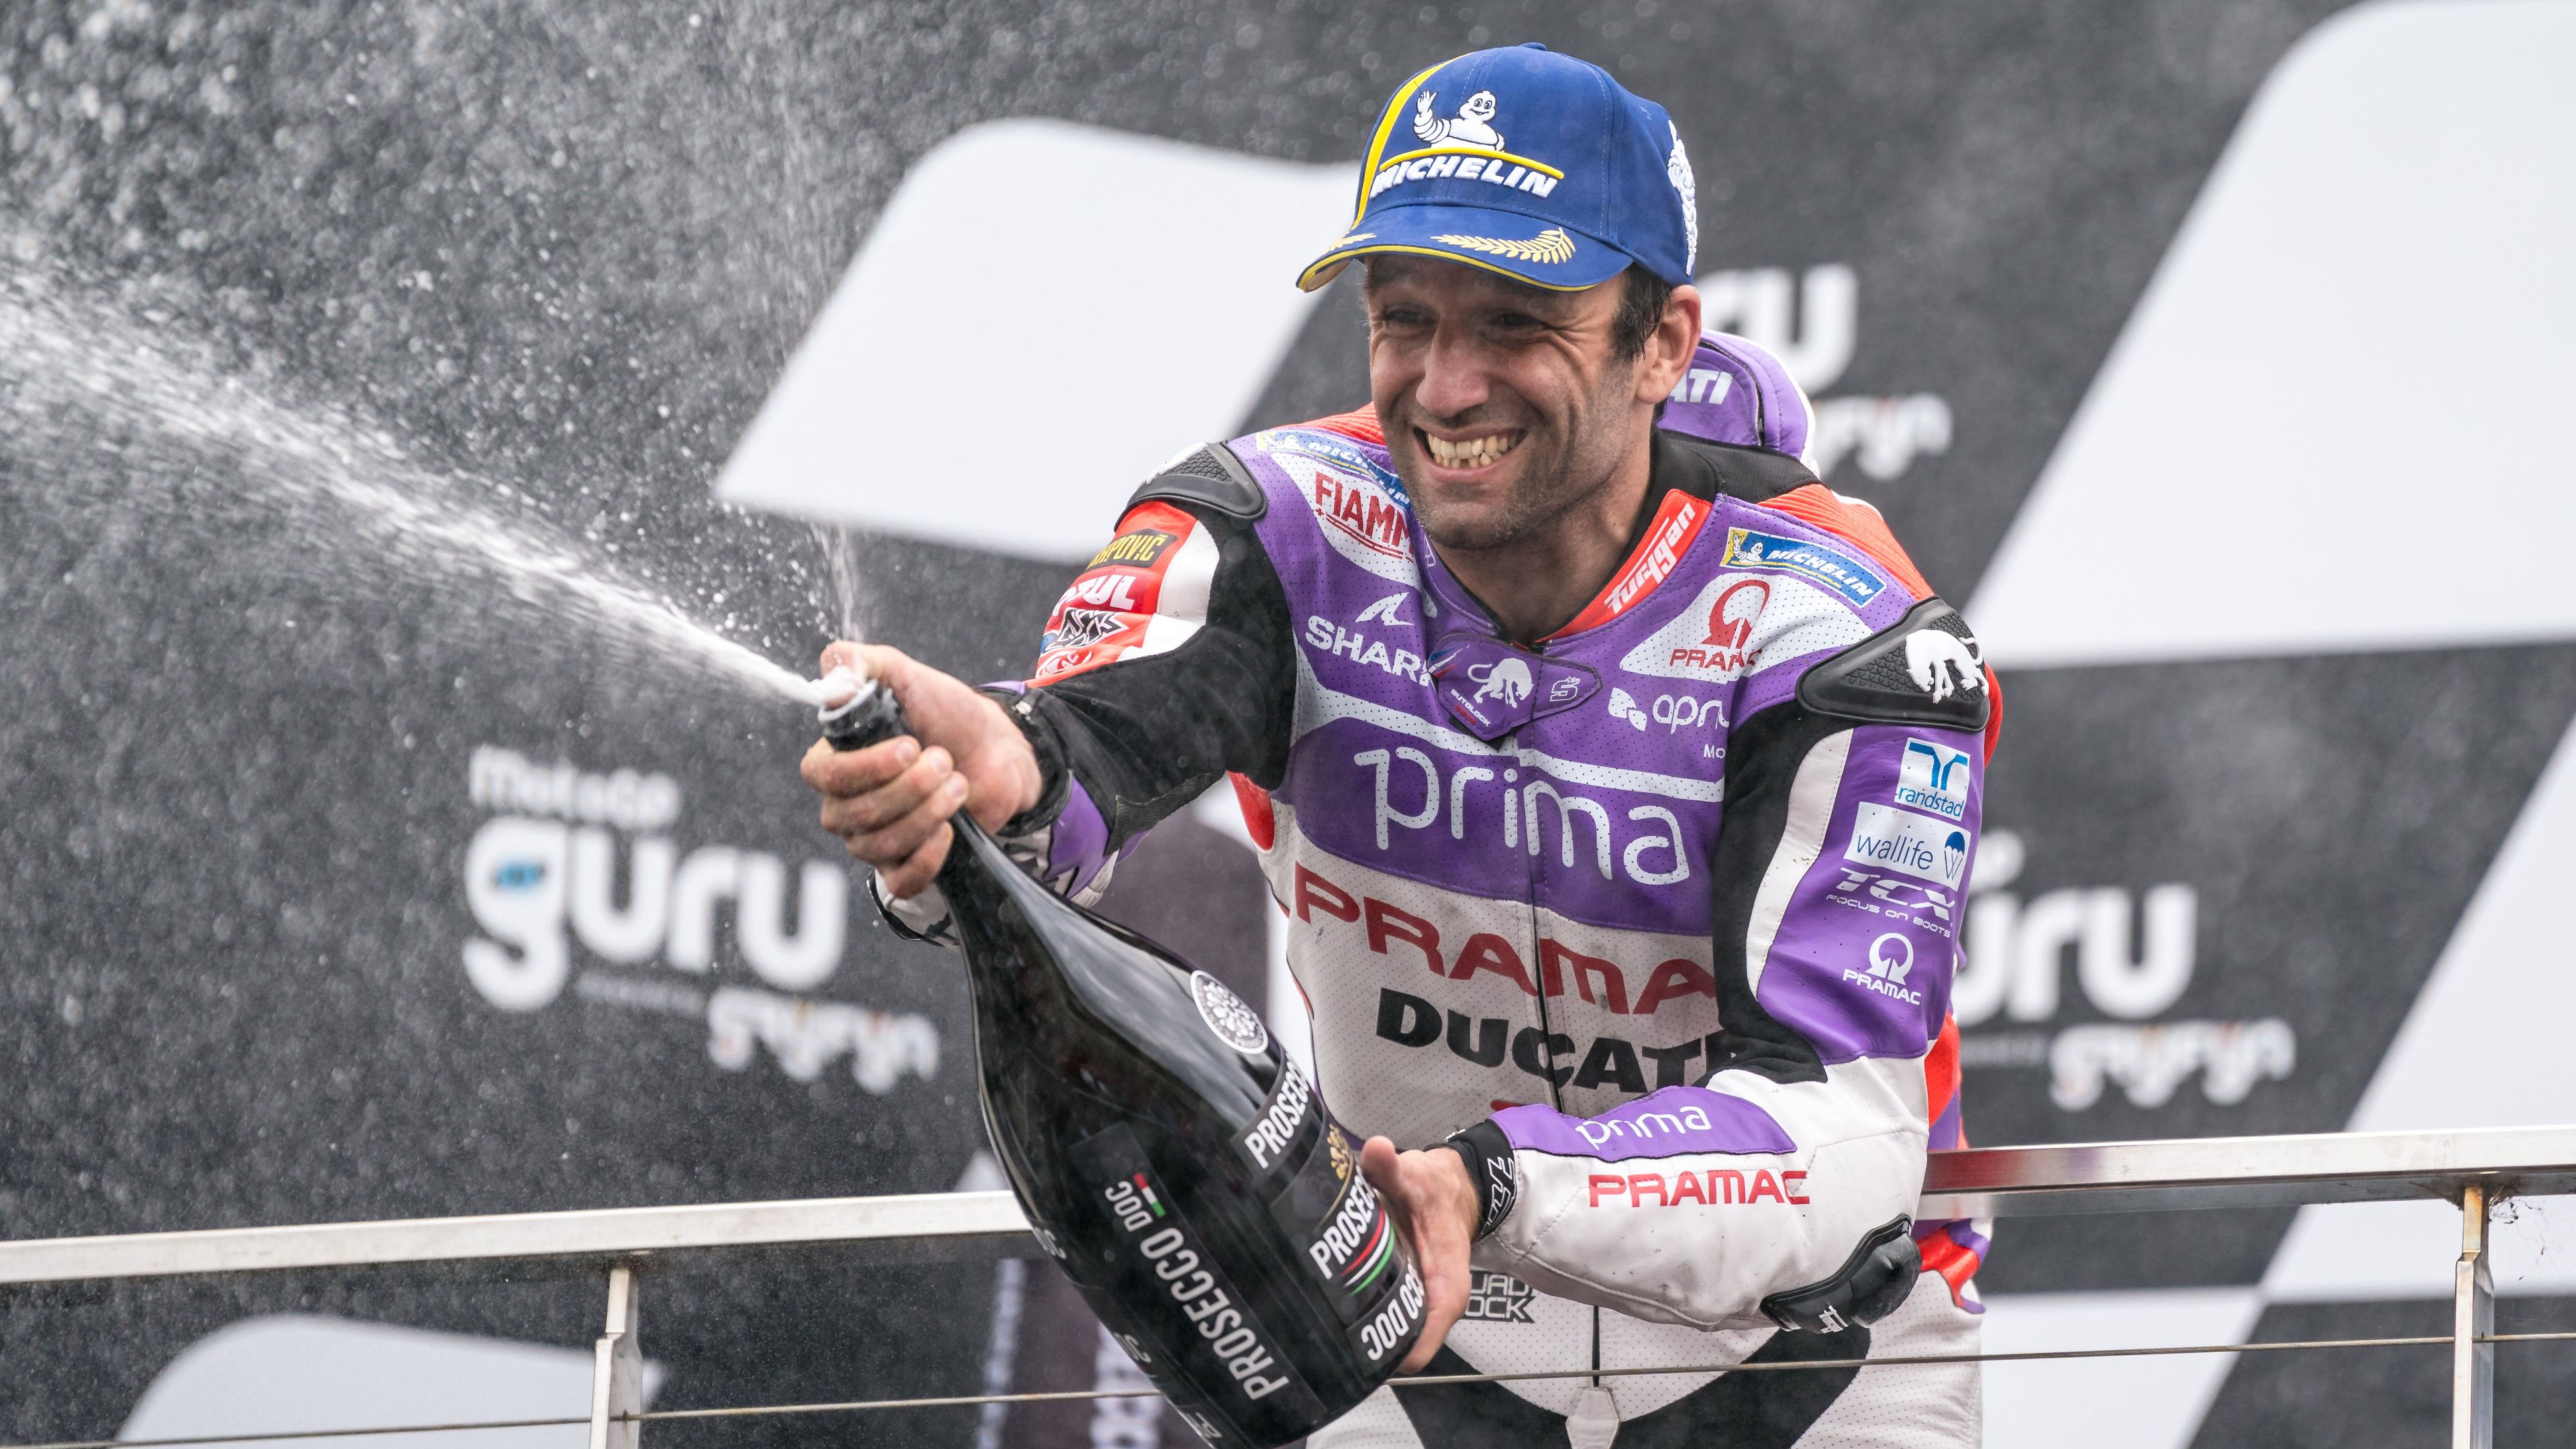 MotoGP: nagy fordulat az utolsó körben, Zarco győzött az Ausztrál Nagydíjon – videóval